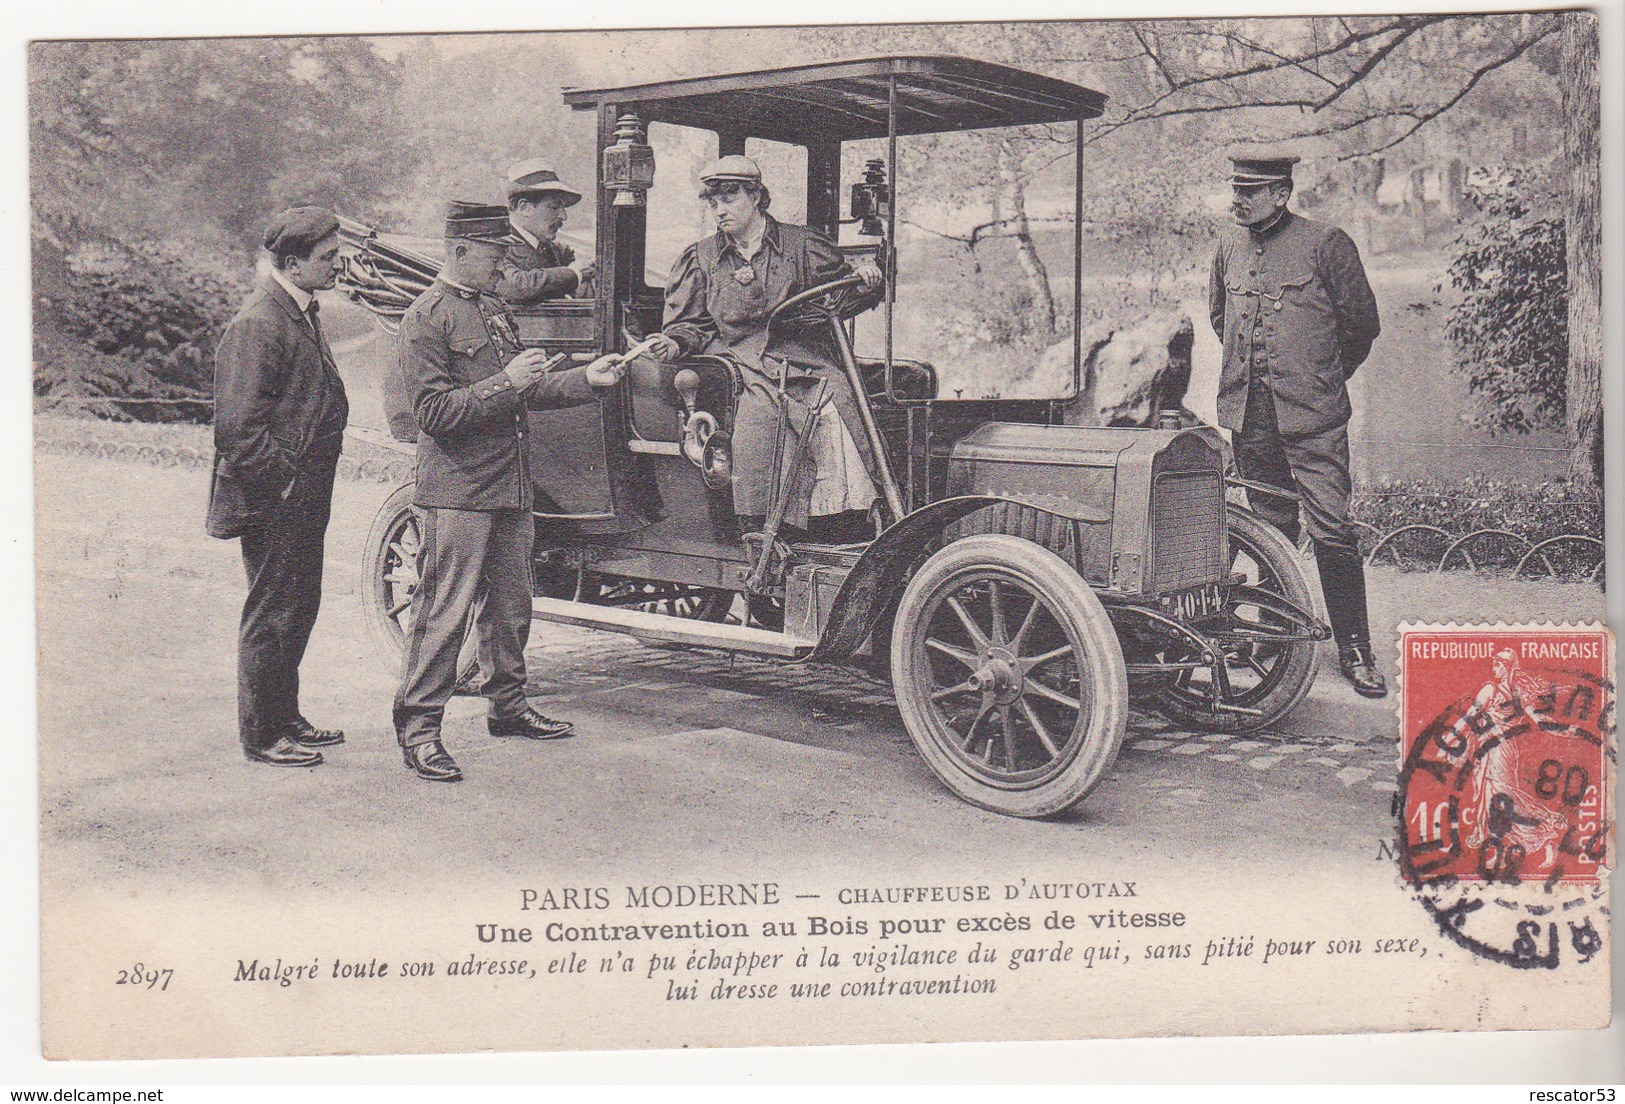 Très Rare Cpa Paris Moderne Chauffeuse D'autotax Une Contravention Au Bois Pour Excès De Vitesse 1908 - Taxis & Cabs